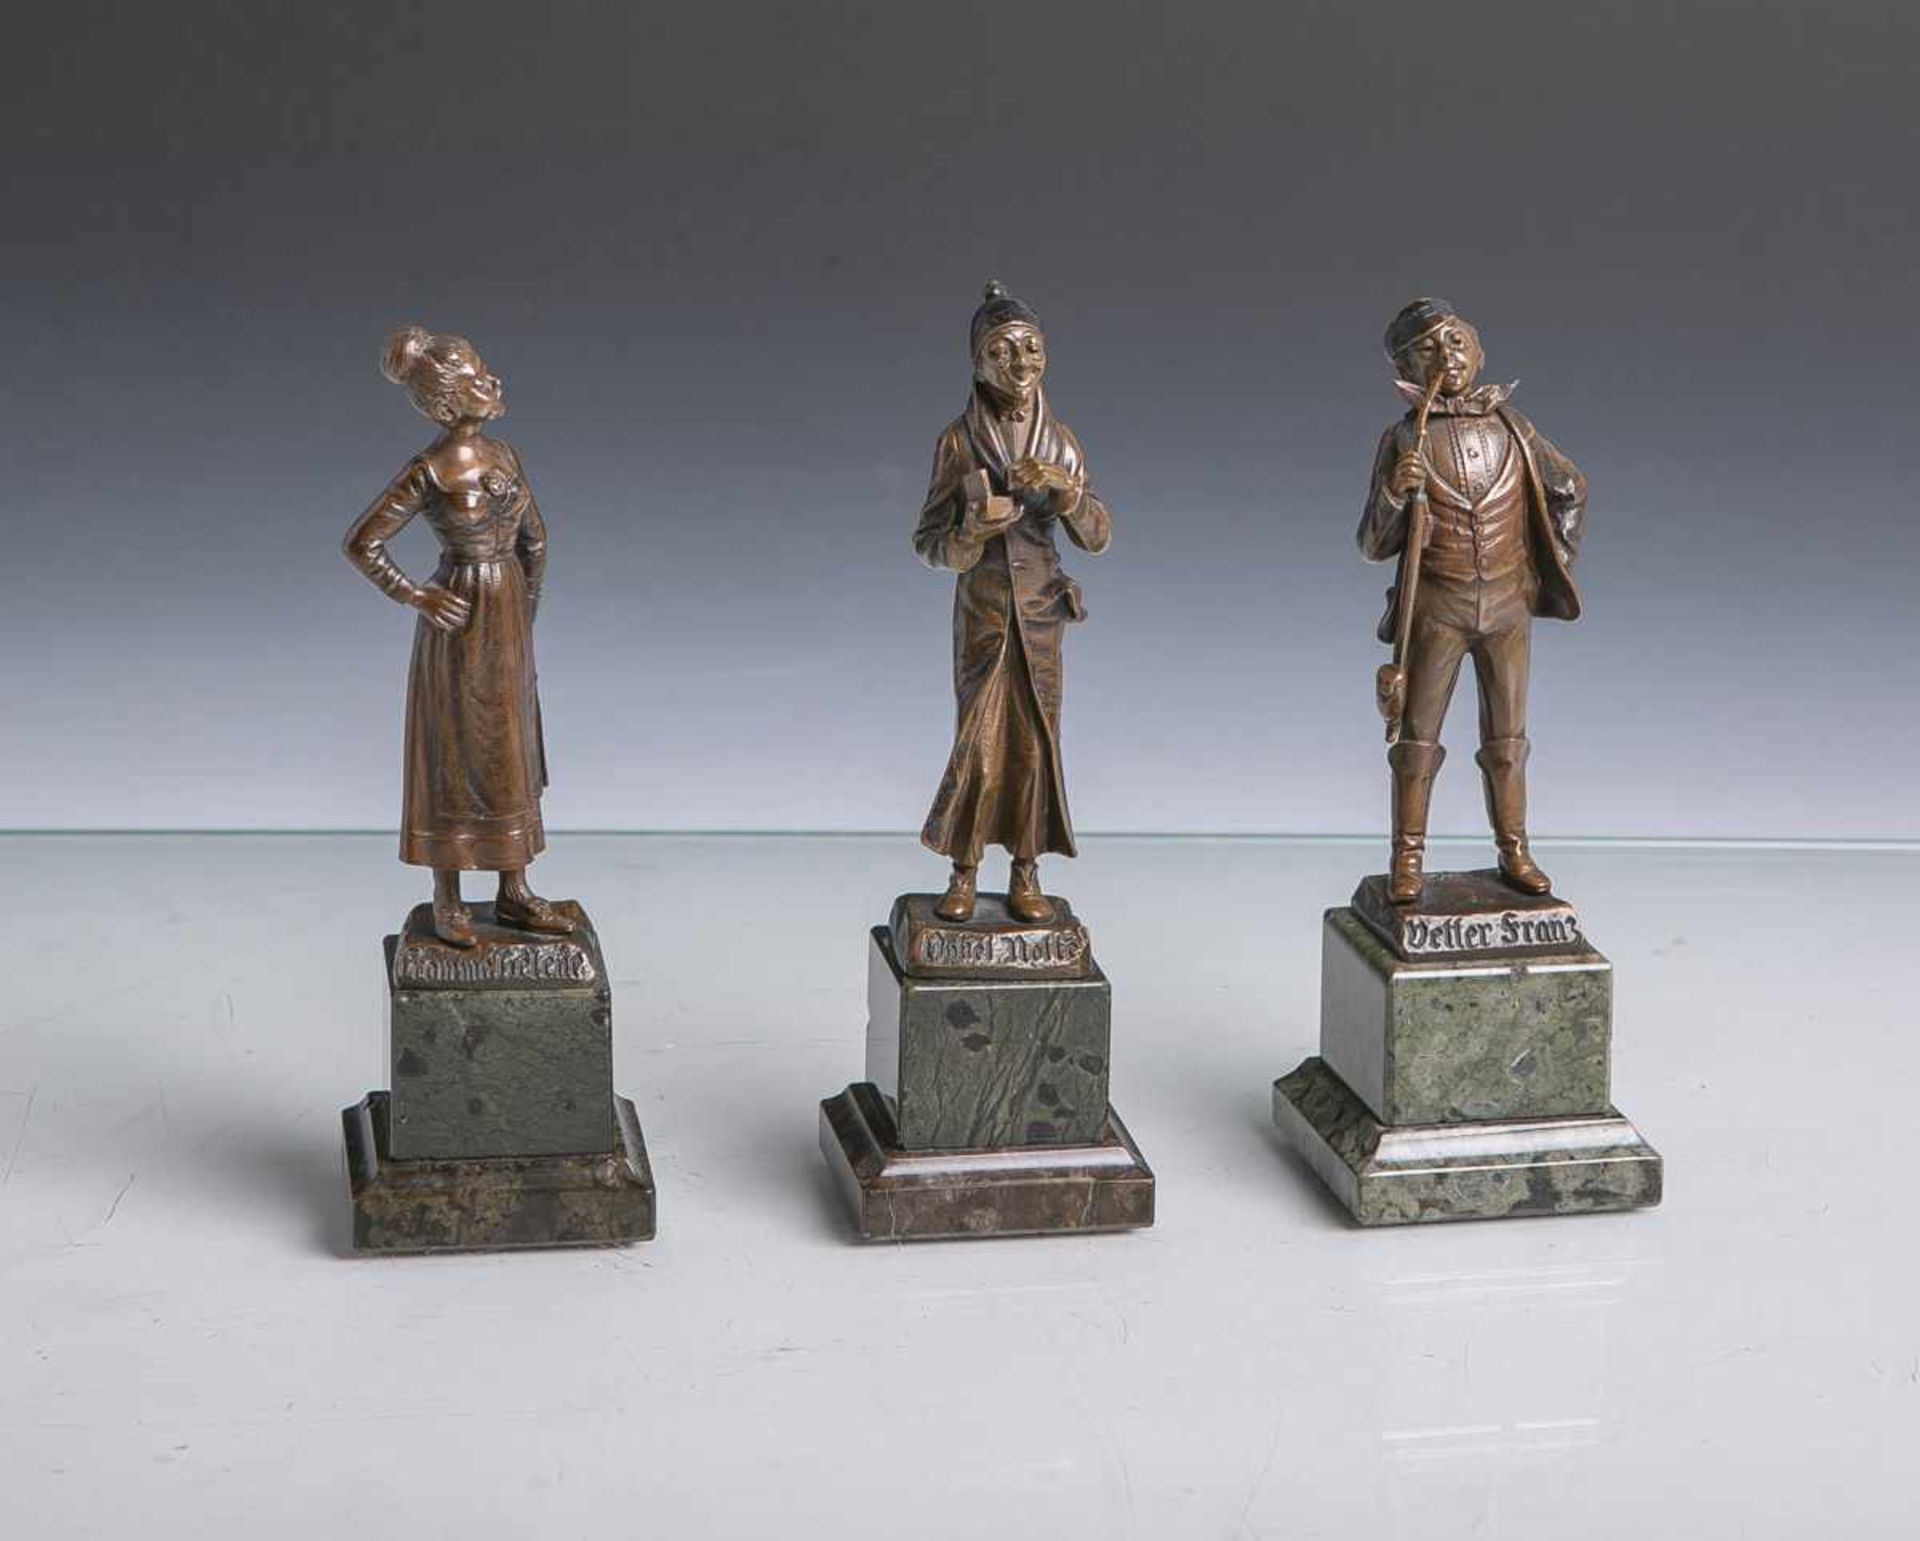 Monath, O. (wohl 19./20. Jahrhundert), 3 Bronzefiguren aus Wilhelm Busch, bestehend aus:"Vetter